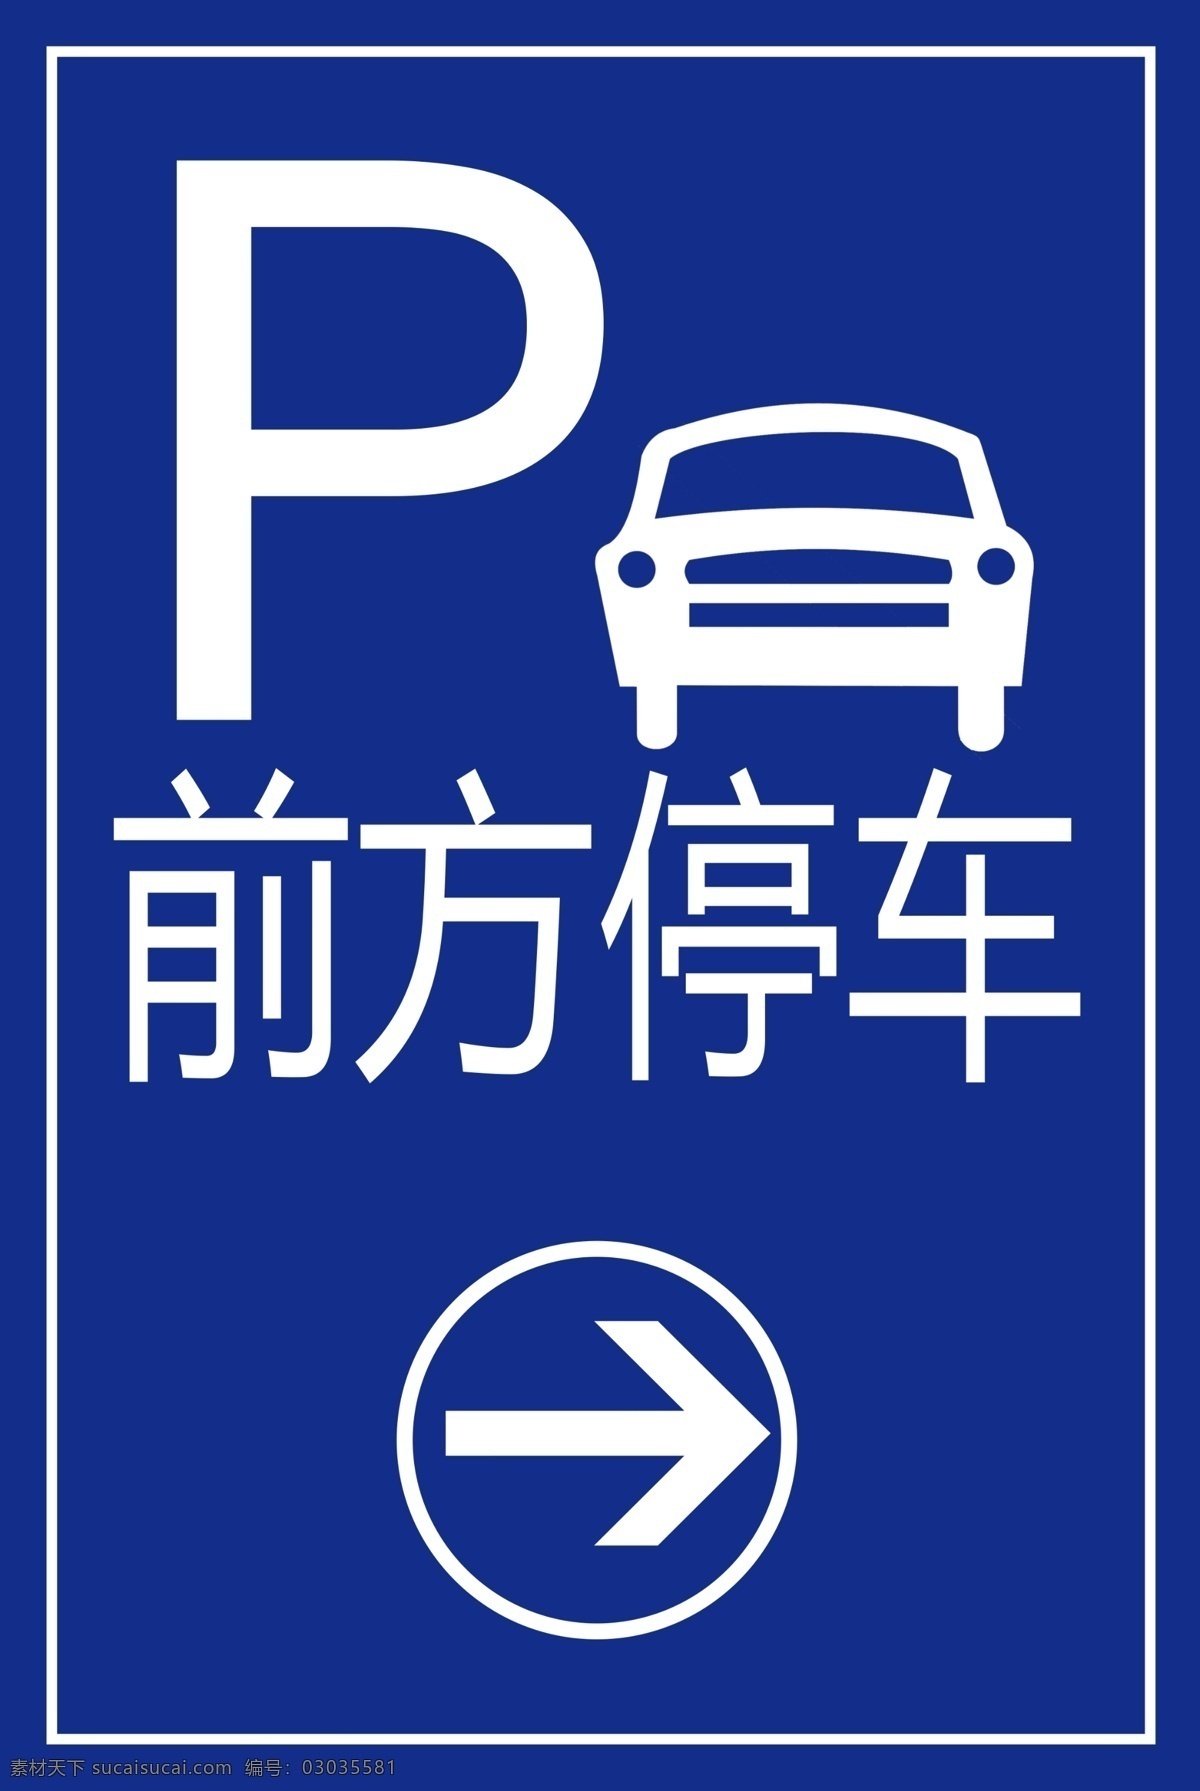 新 前方 停车 前方停车 新前方停车 标志 前进方向 标志图标 公共标识标志